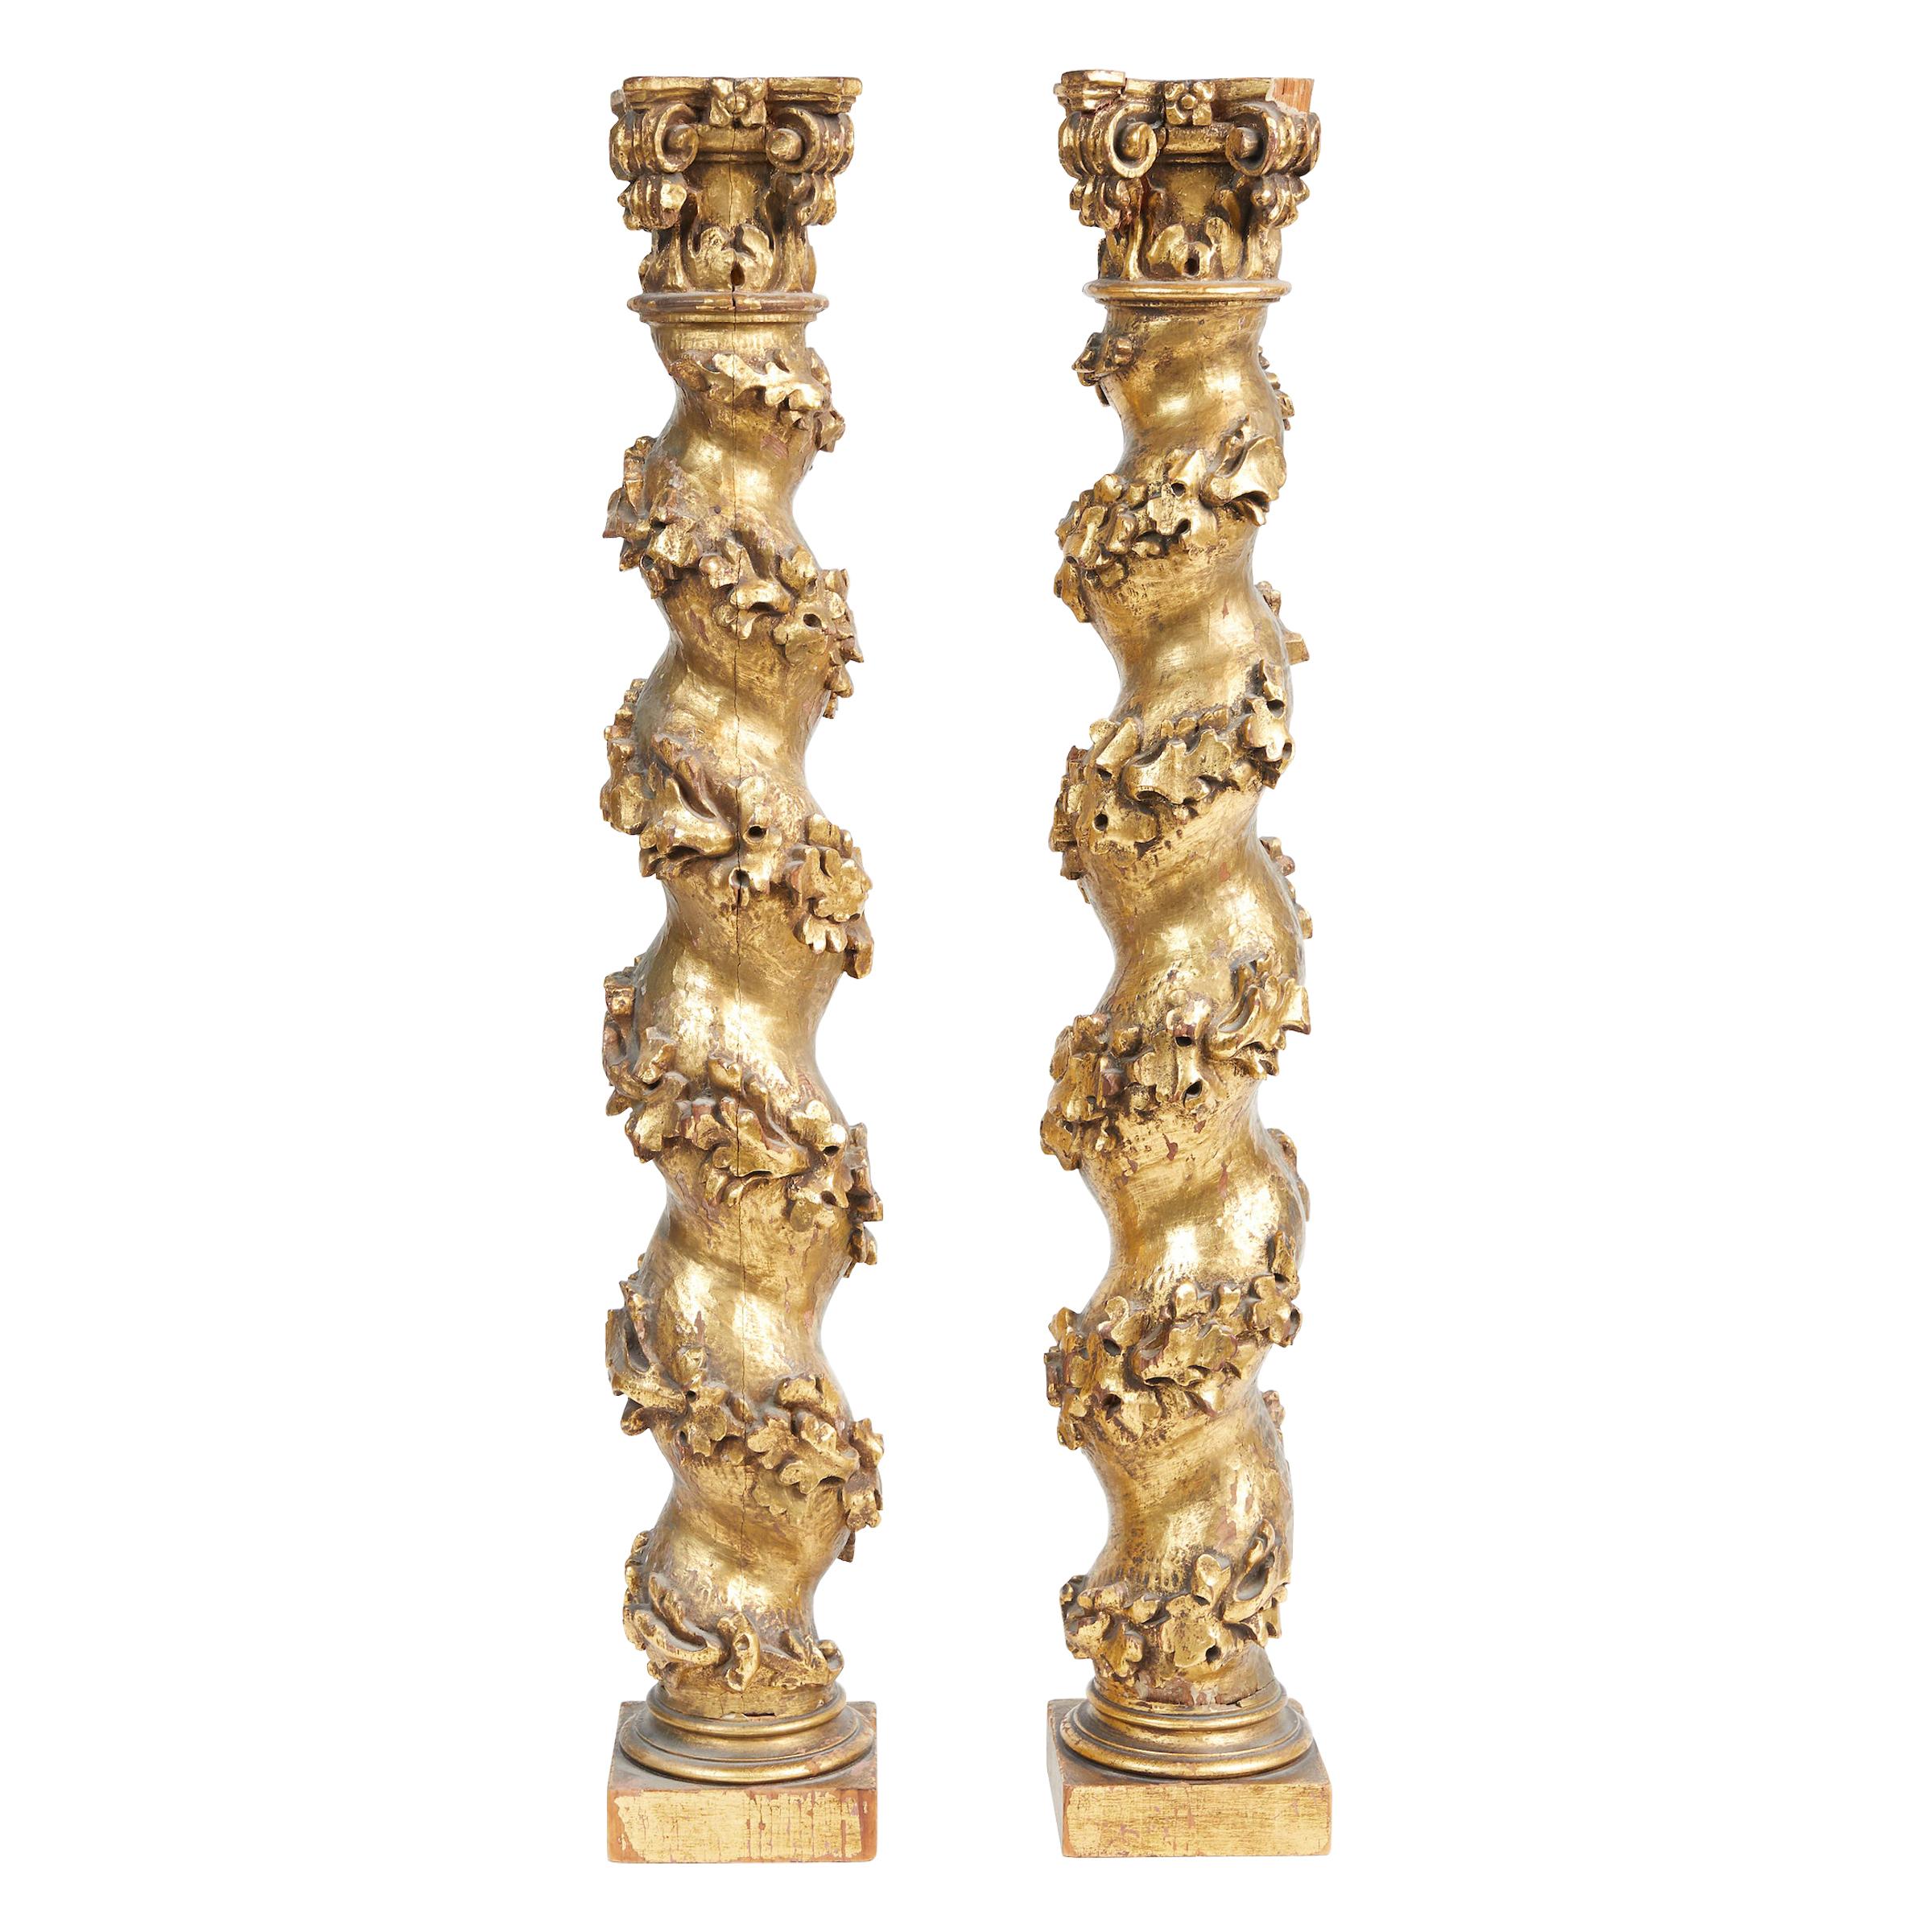 Paire de petites colonnes baroques italiennes en bois doré et sculpté